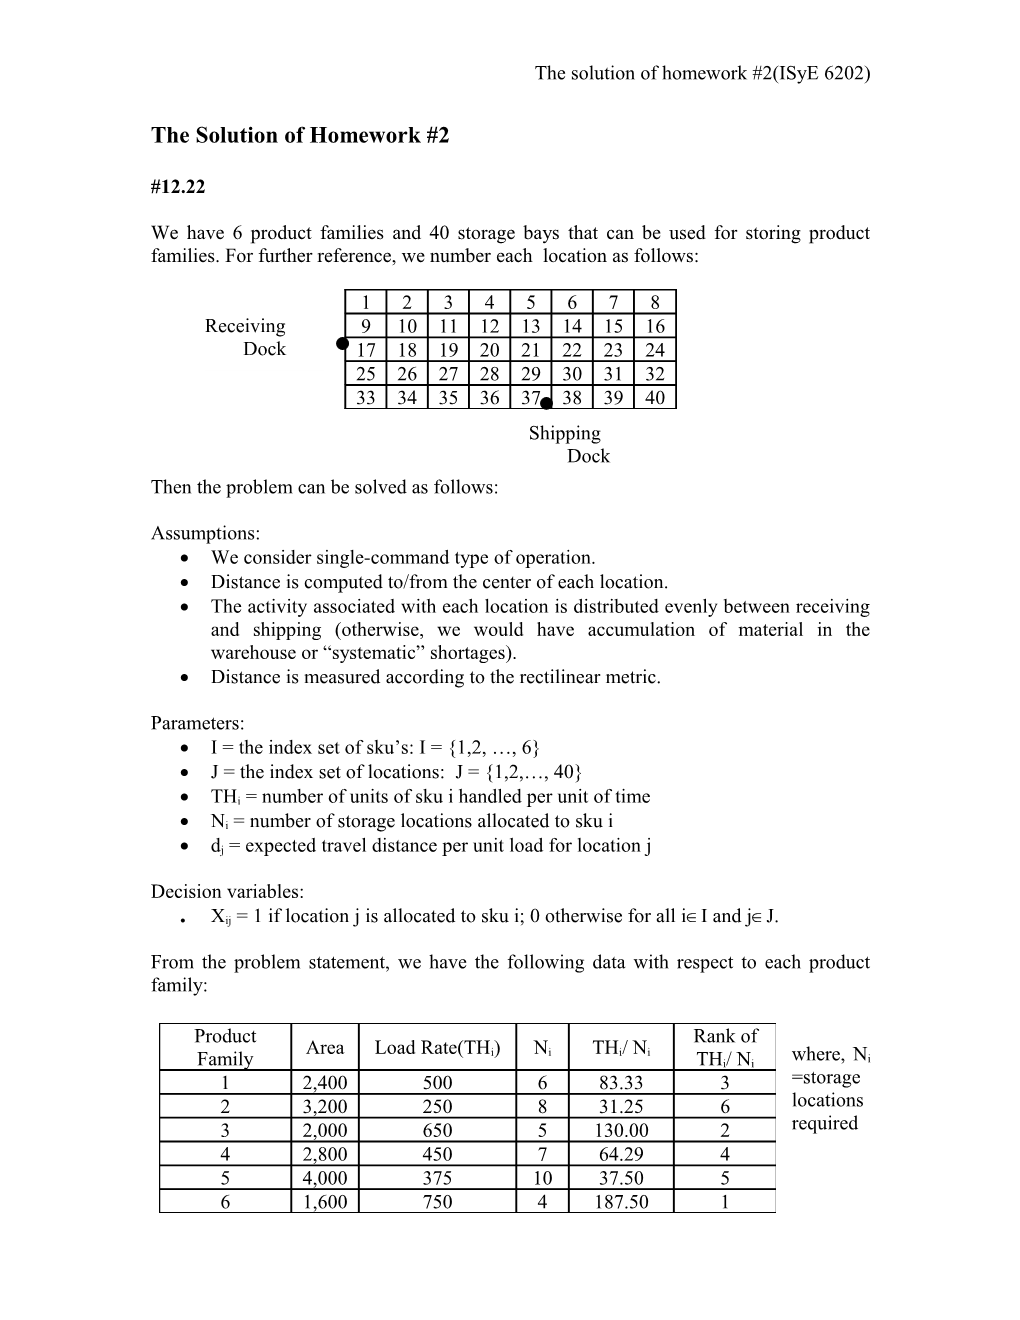 The Solution of Homework #2(Isye 6202)